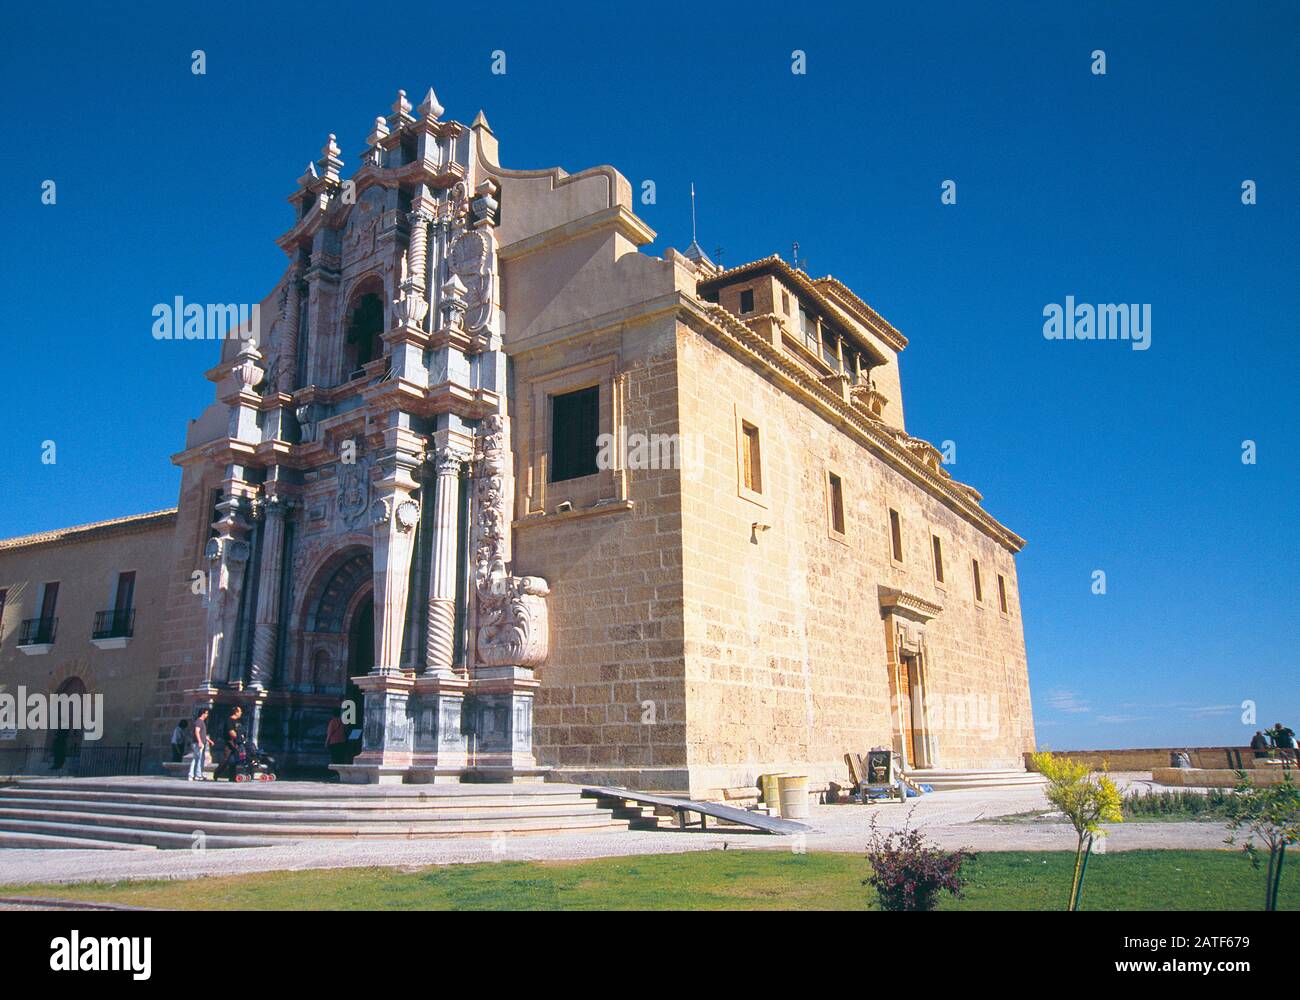 Facade of sanctuary. Caravaca de la Cruz, Murcia province, Spain. Stock Photo